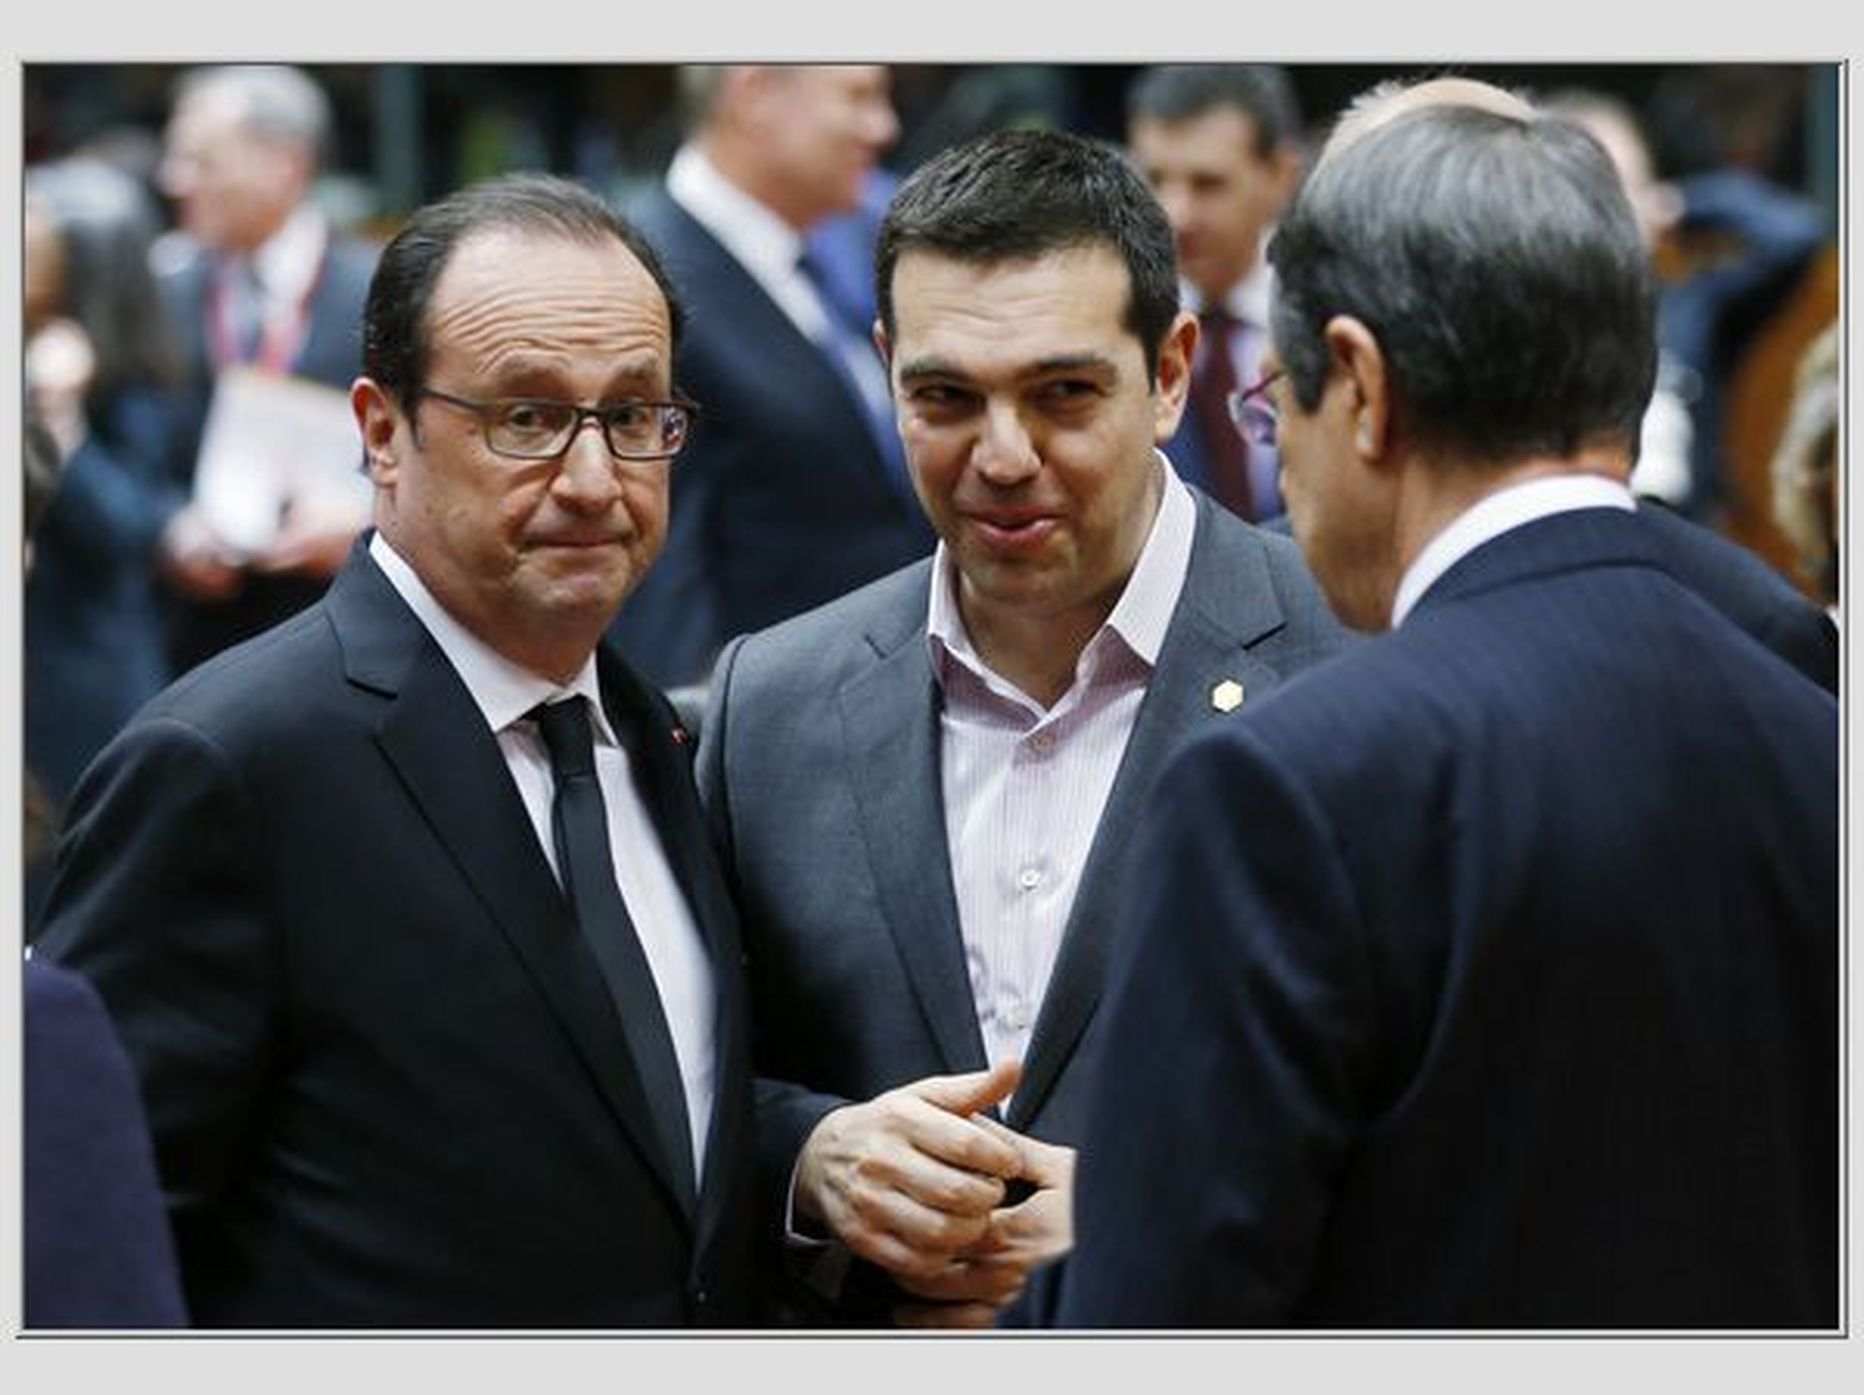 ELi tippkohtumisel on vestlusringis Prantsuse president Francois Hollande, Kreeka peaminister Alexis Tsipras ja Küprose riigipea Nicos Anastasiades.